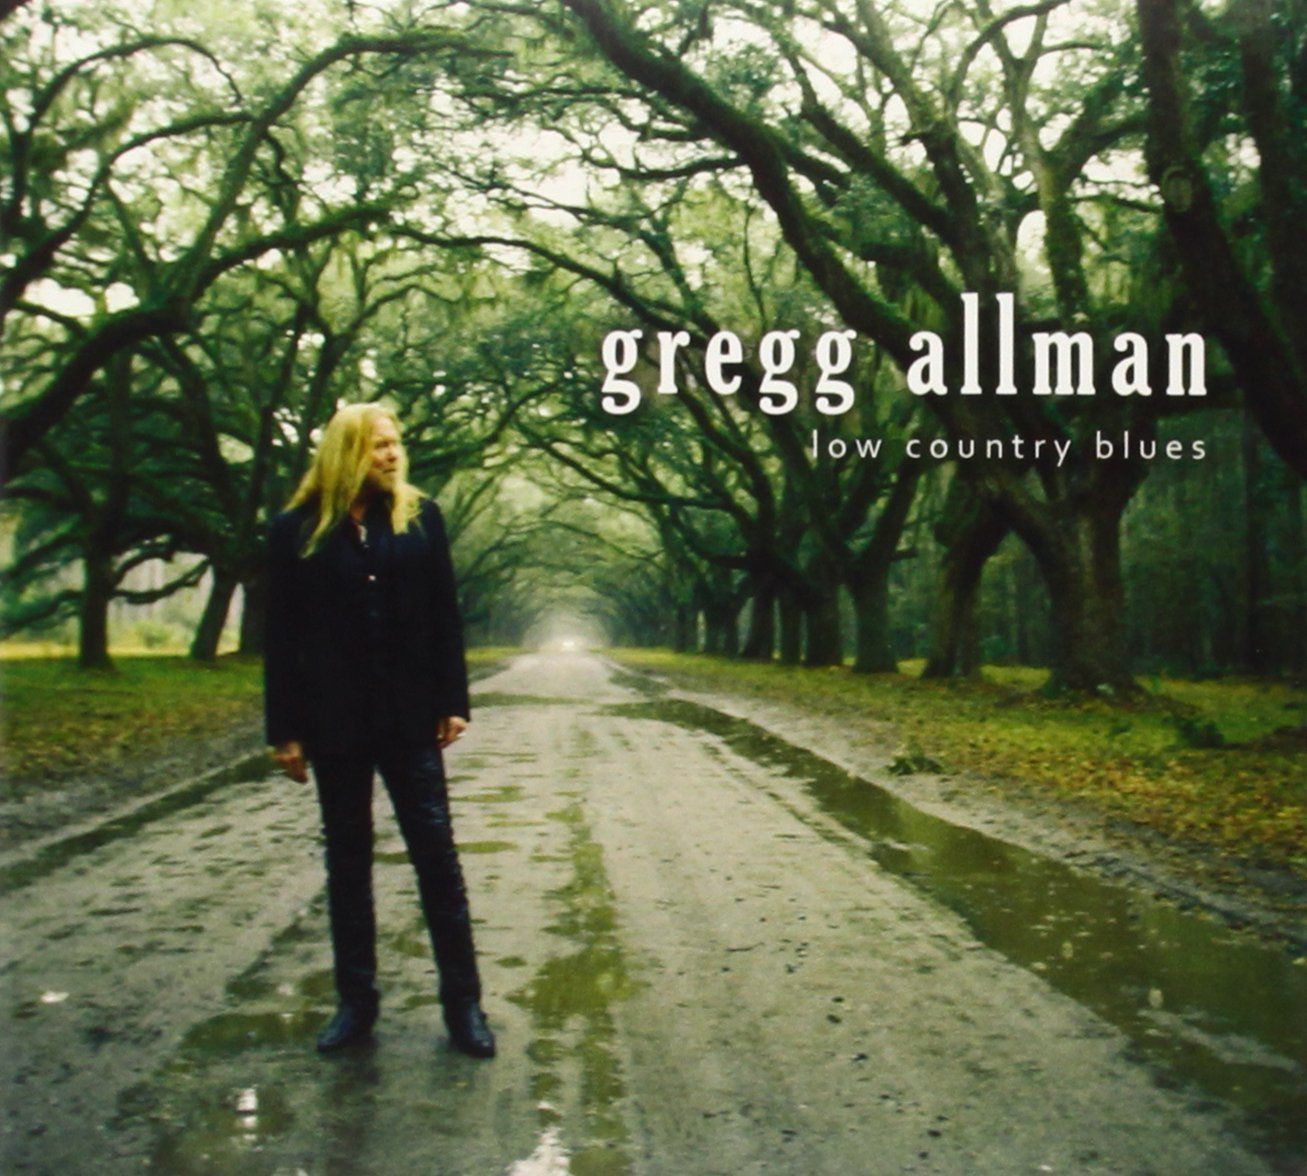 Gregg Allman: Musiker zollen dem verstorbenen Sänger Tribut